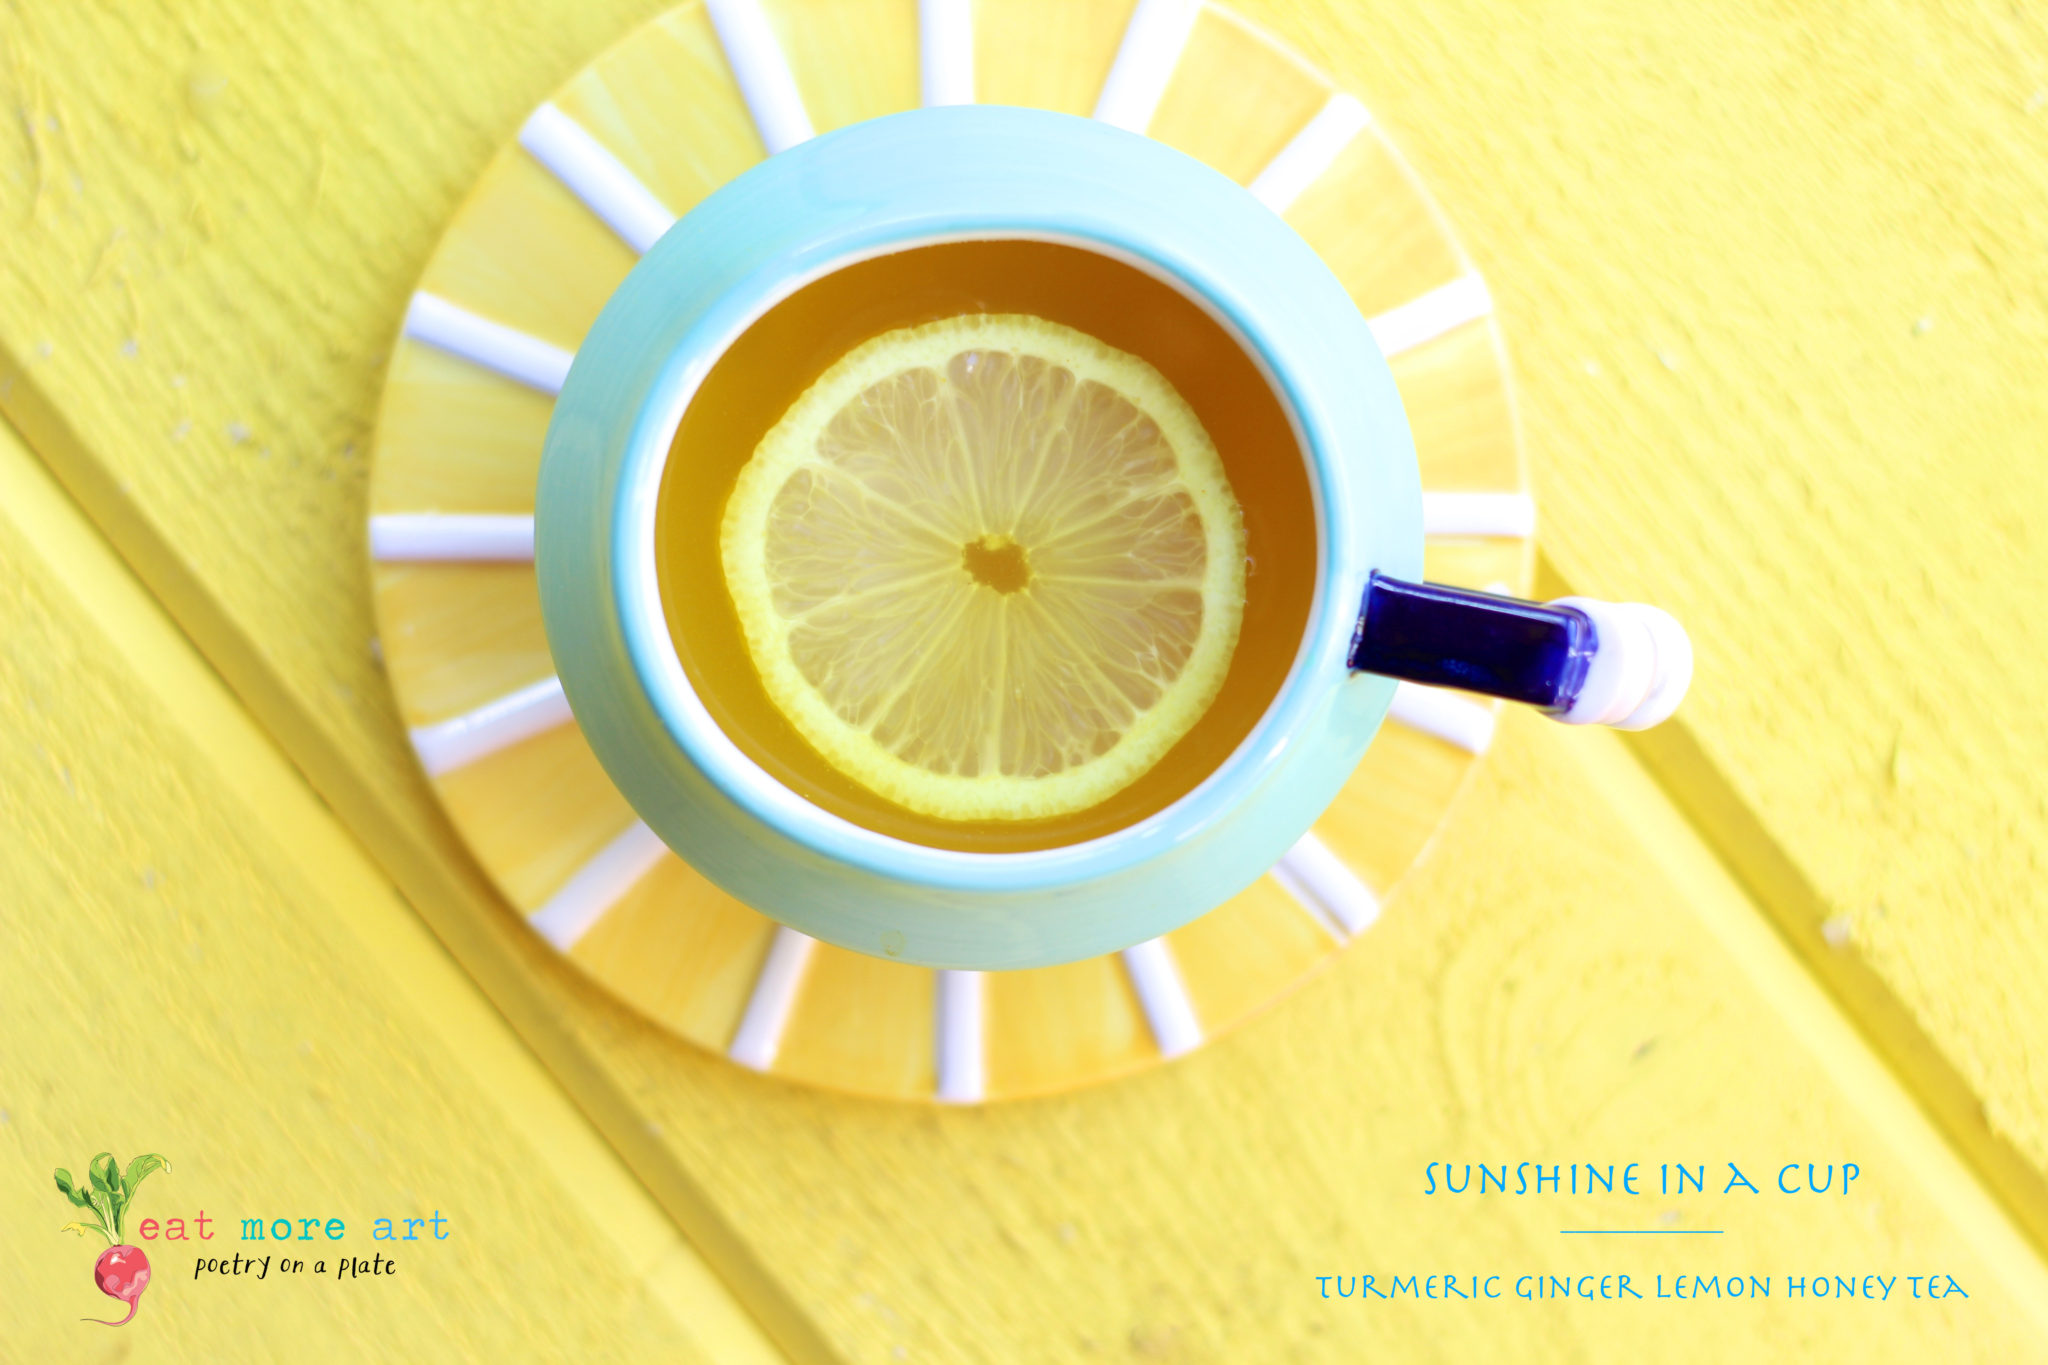 Sunshine in a Cup | Turmeric Ginger Lemon Honey Tea